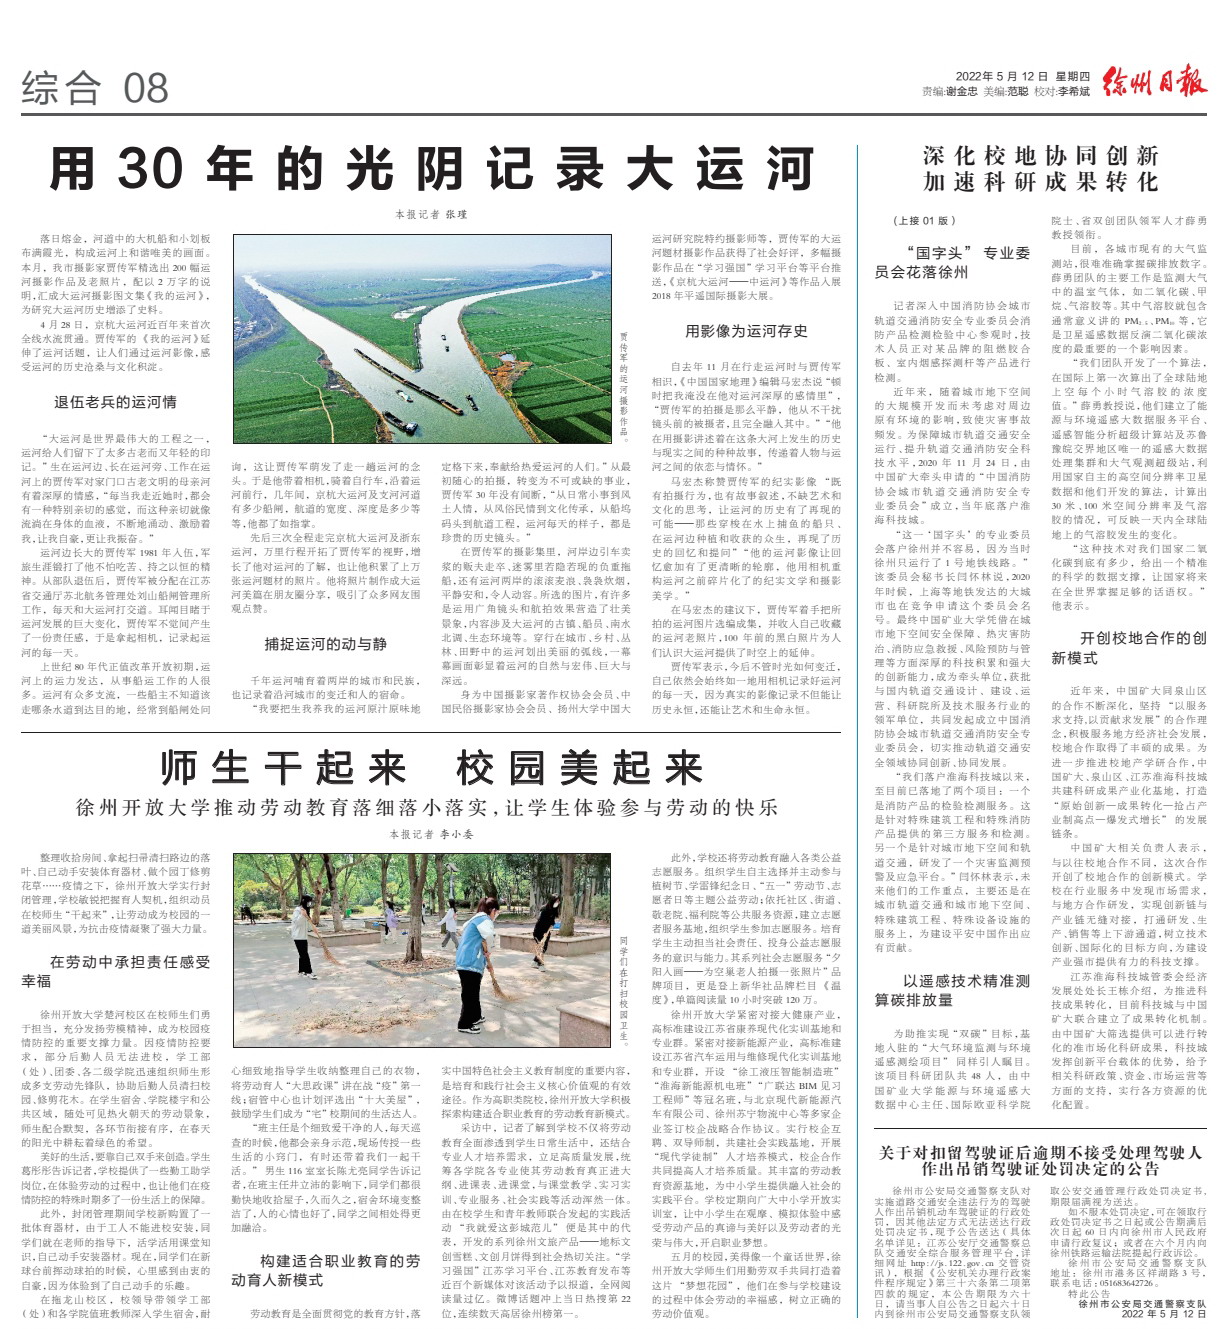 《徐州日报》、“汉风号”重点刊登4166com金沙劳动教育新经验